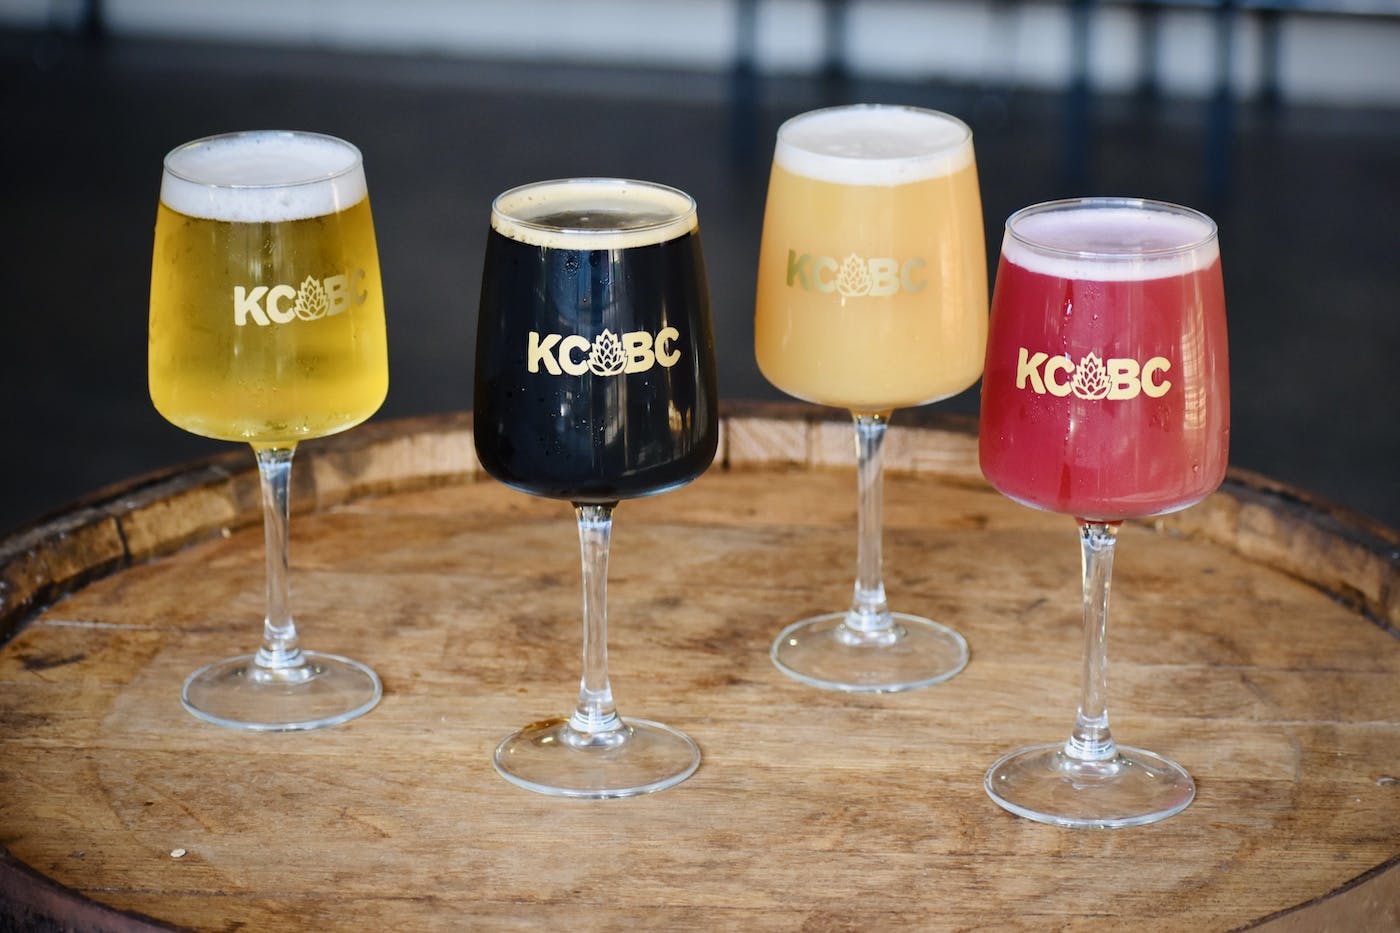 4 types of beer styles in long stem glasses